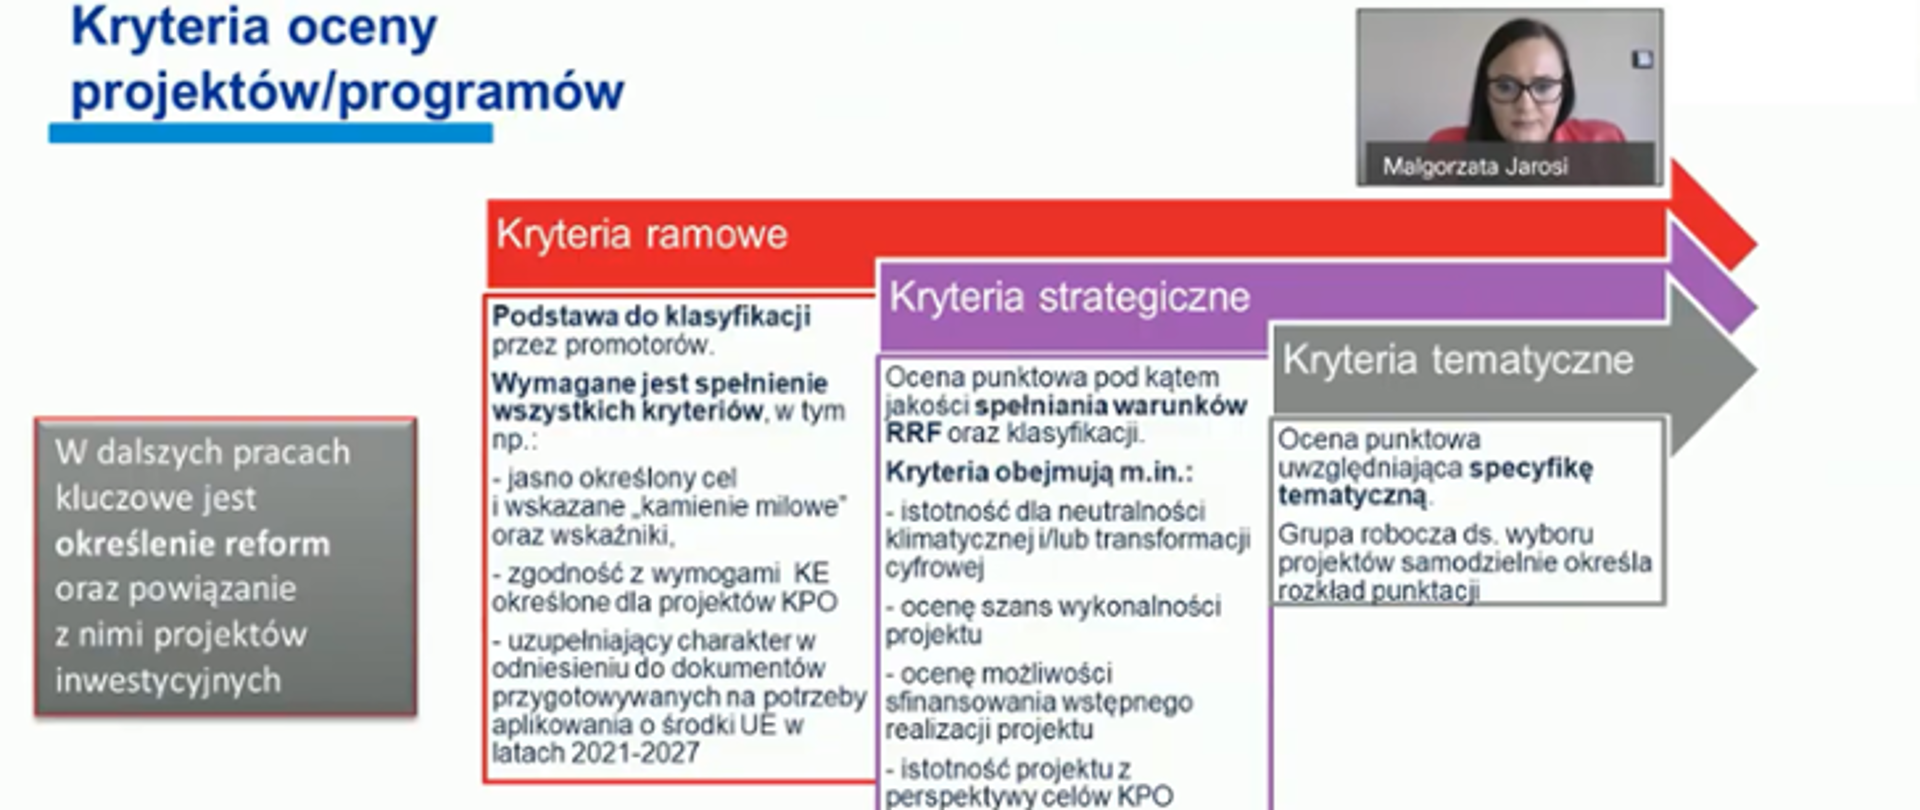 Zrzut ekranu z prezentacją minister Małgorzaty Jarosińskiej-Jedynak. Slajd przedstawia szczegółowo kryteria oceny projektów, programów: ramowe, strategiczne i tematyczne.